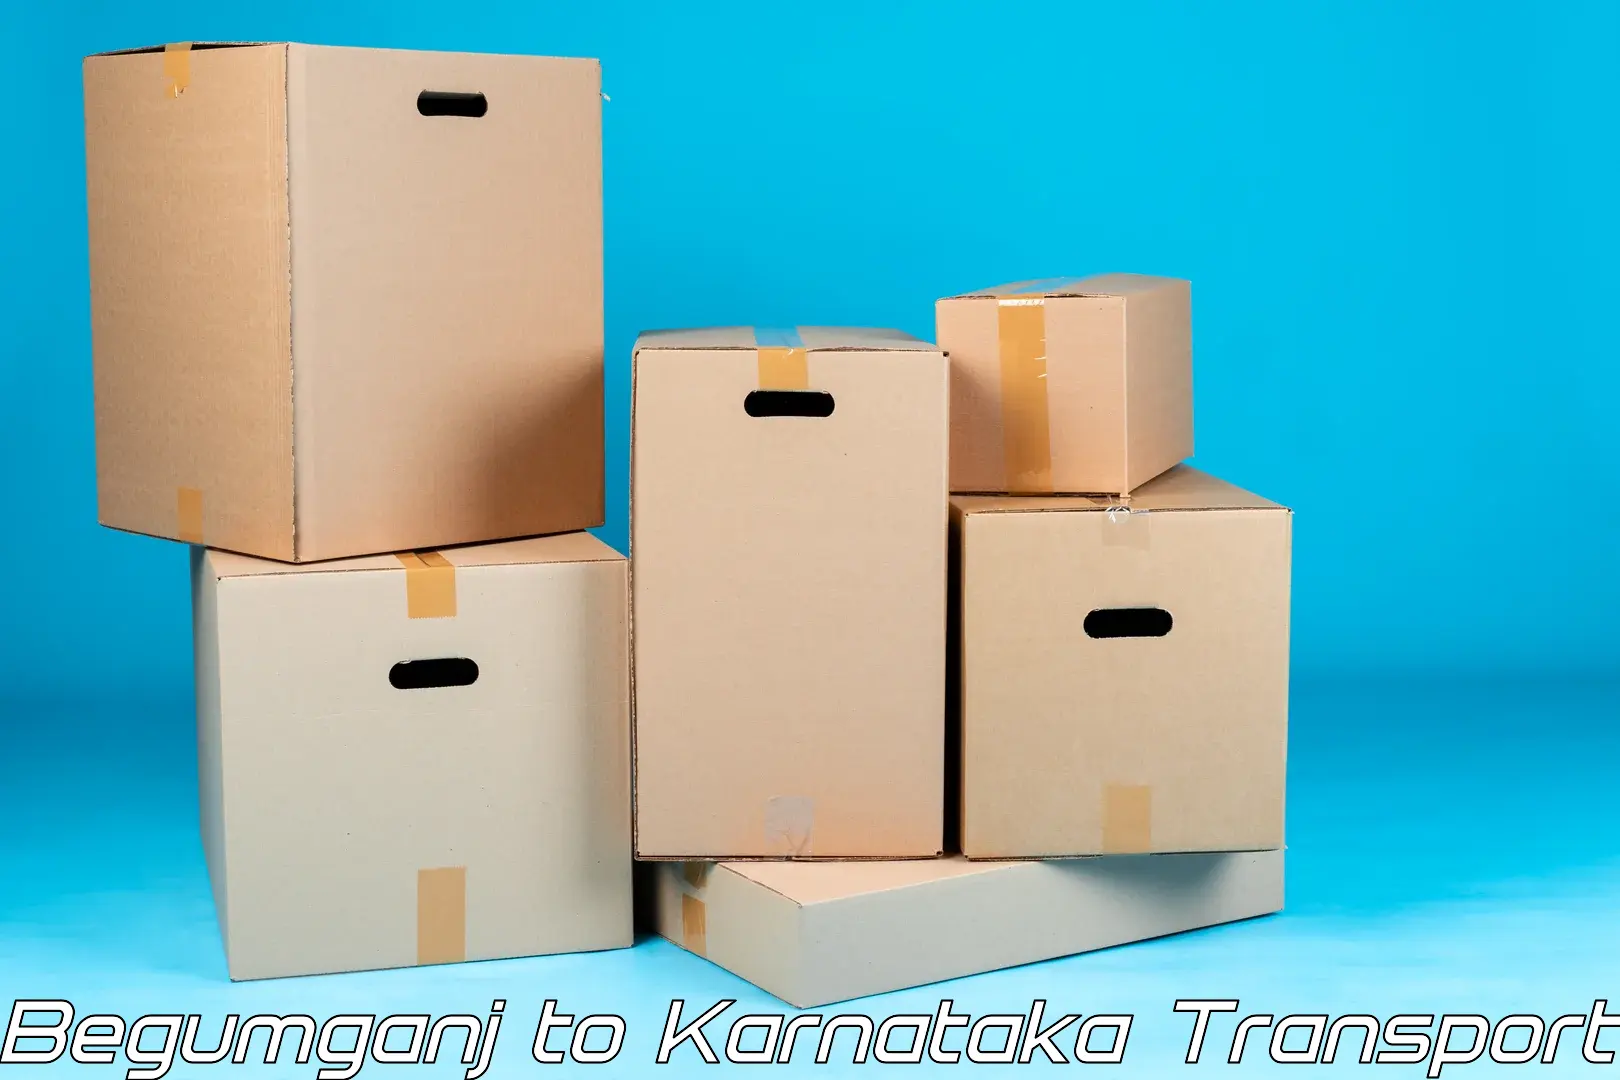 Pick up transport service Begumganj to Uttara Kannada